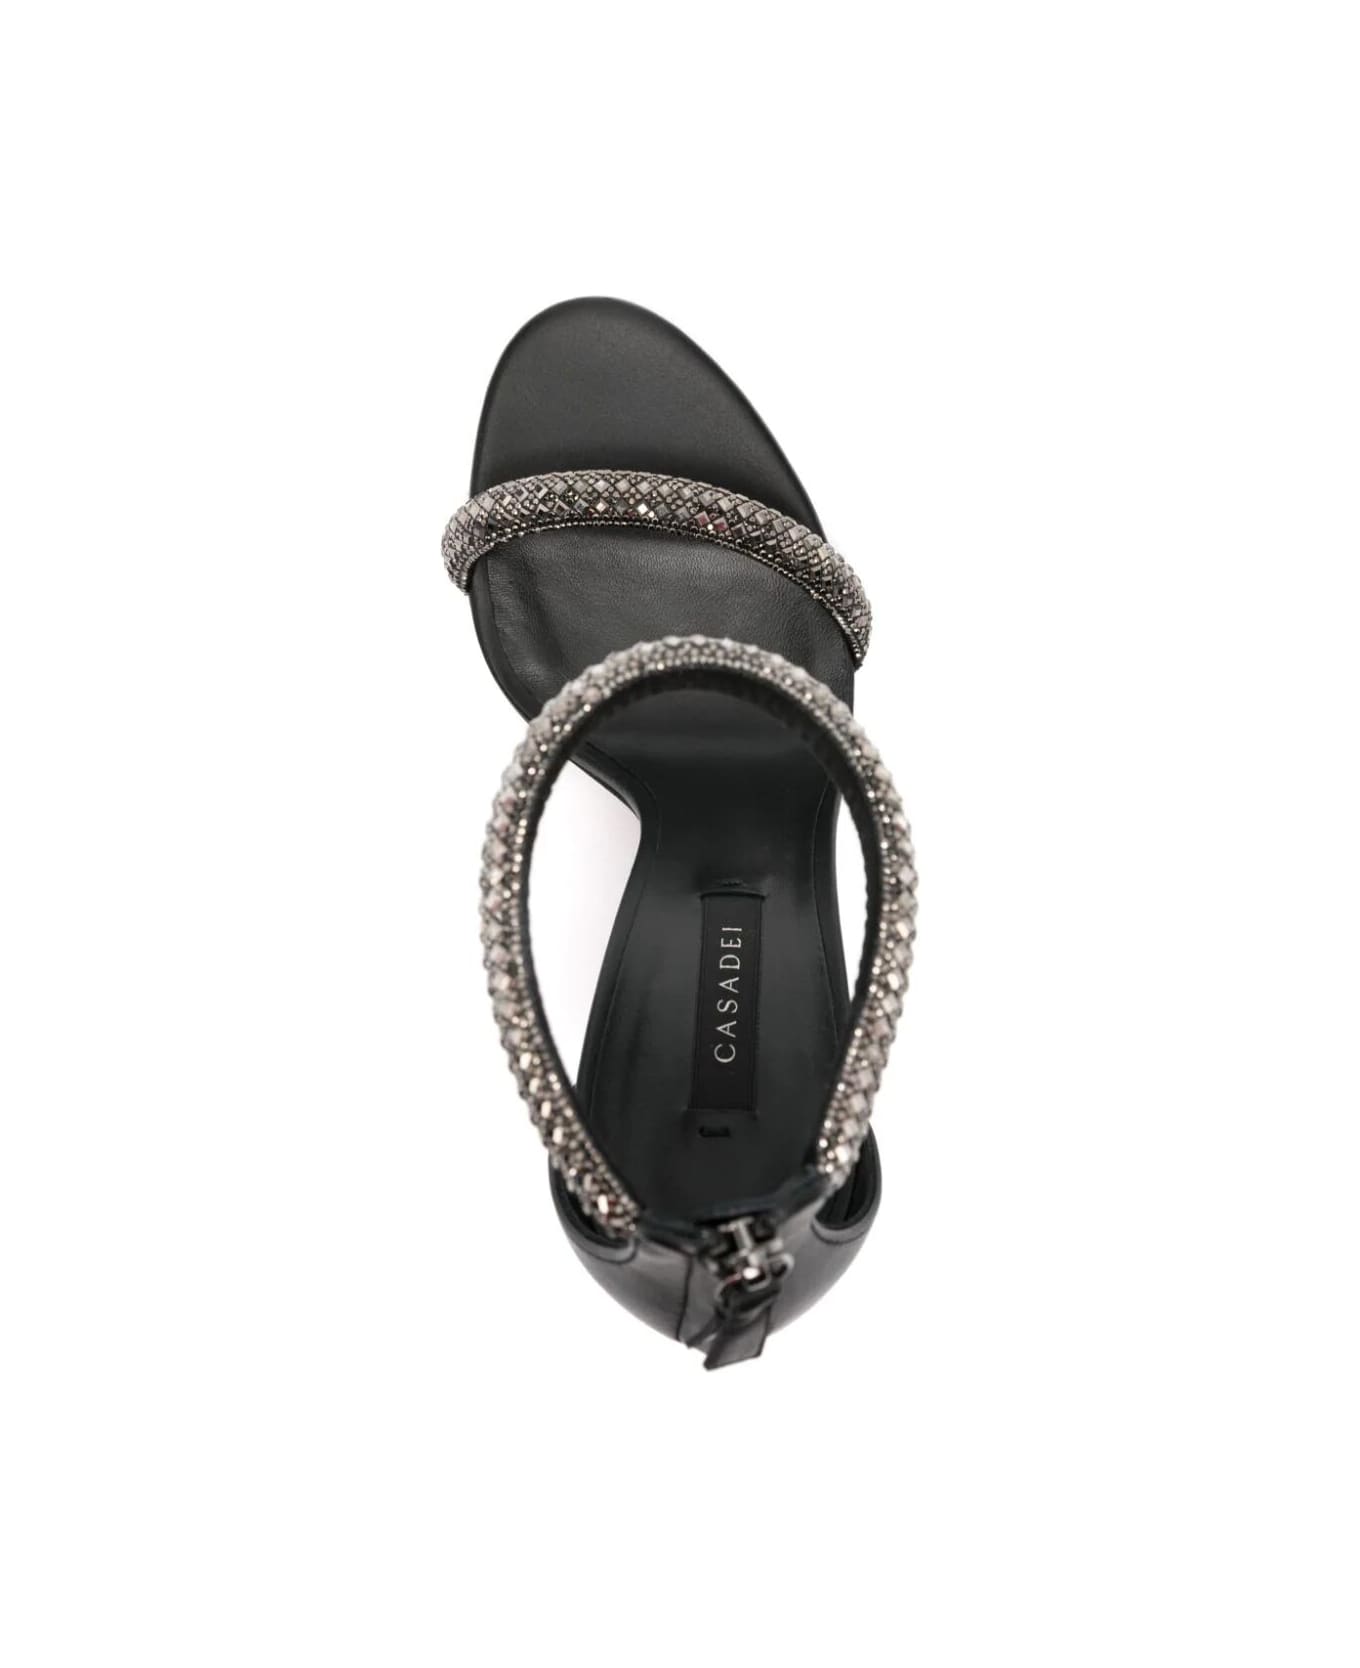 Casadei Elegant Sandal - Ematite Black サンダル